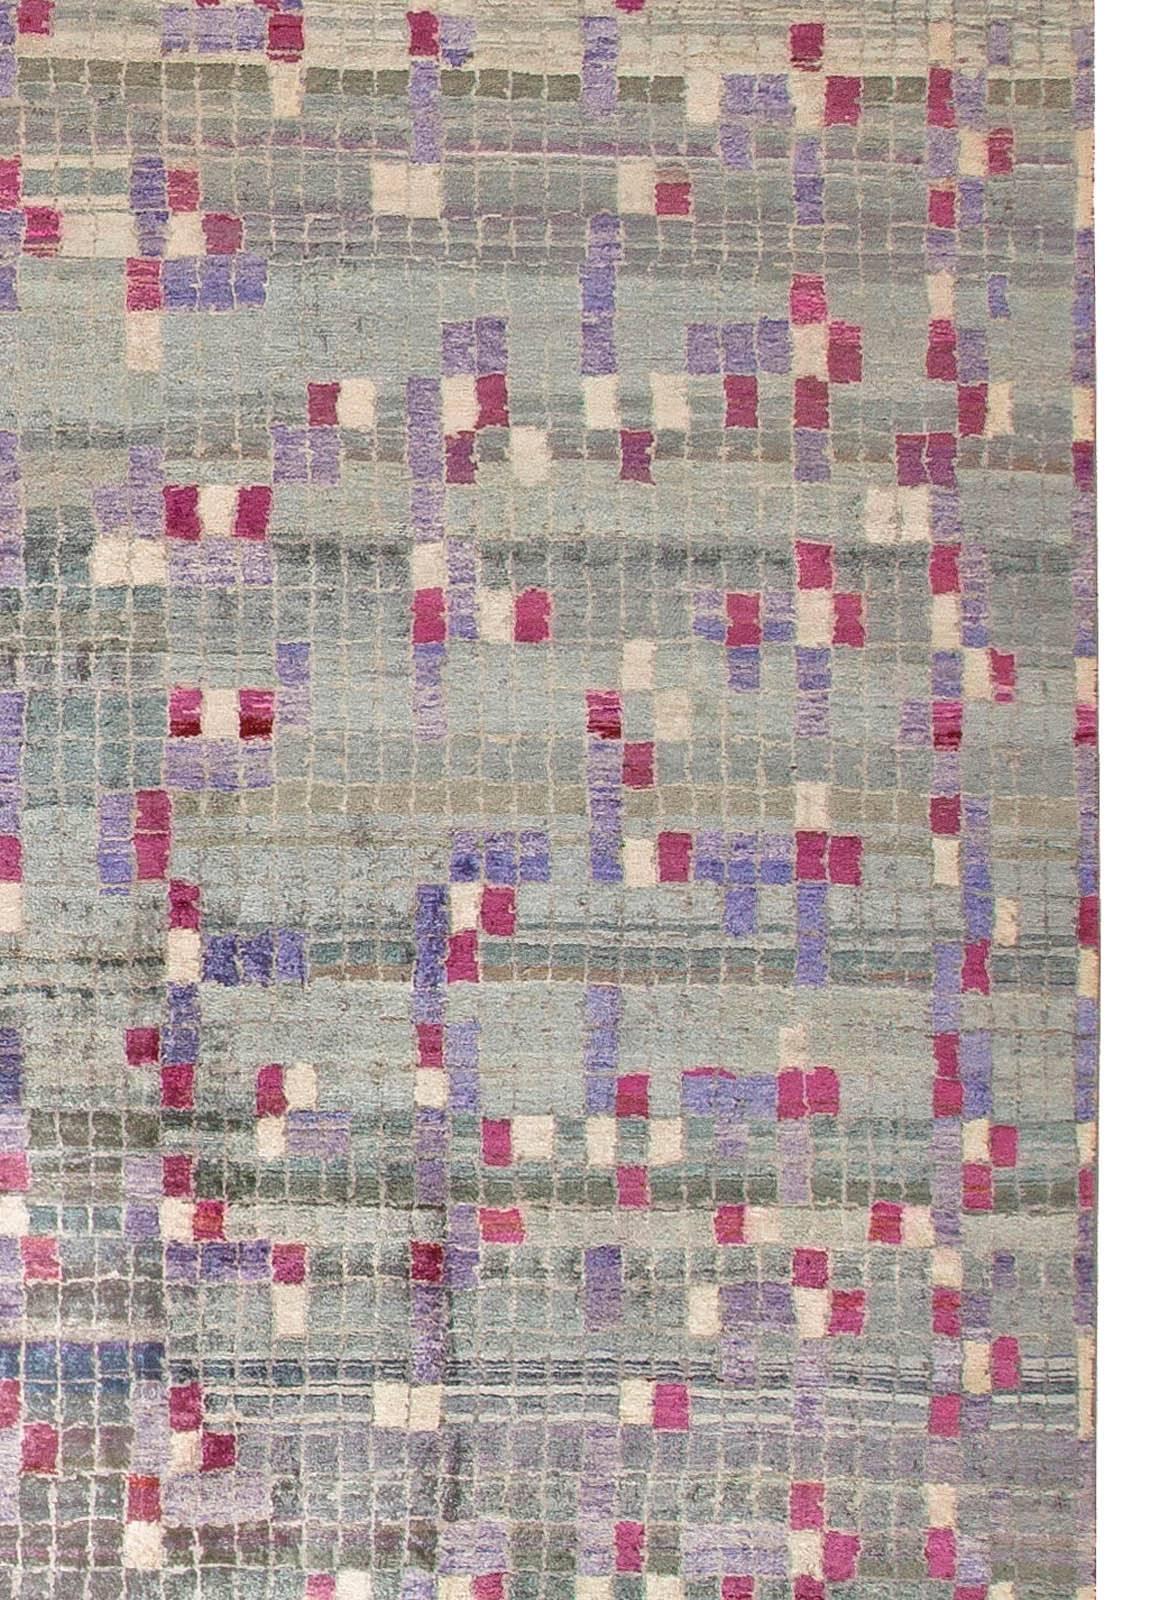 Tapis géométrique moderne en laine POOL tile fait main par Doris Leslie Blau.
Taille : 13'9